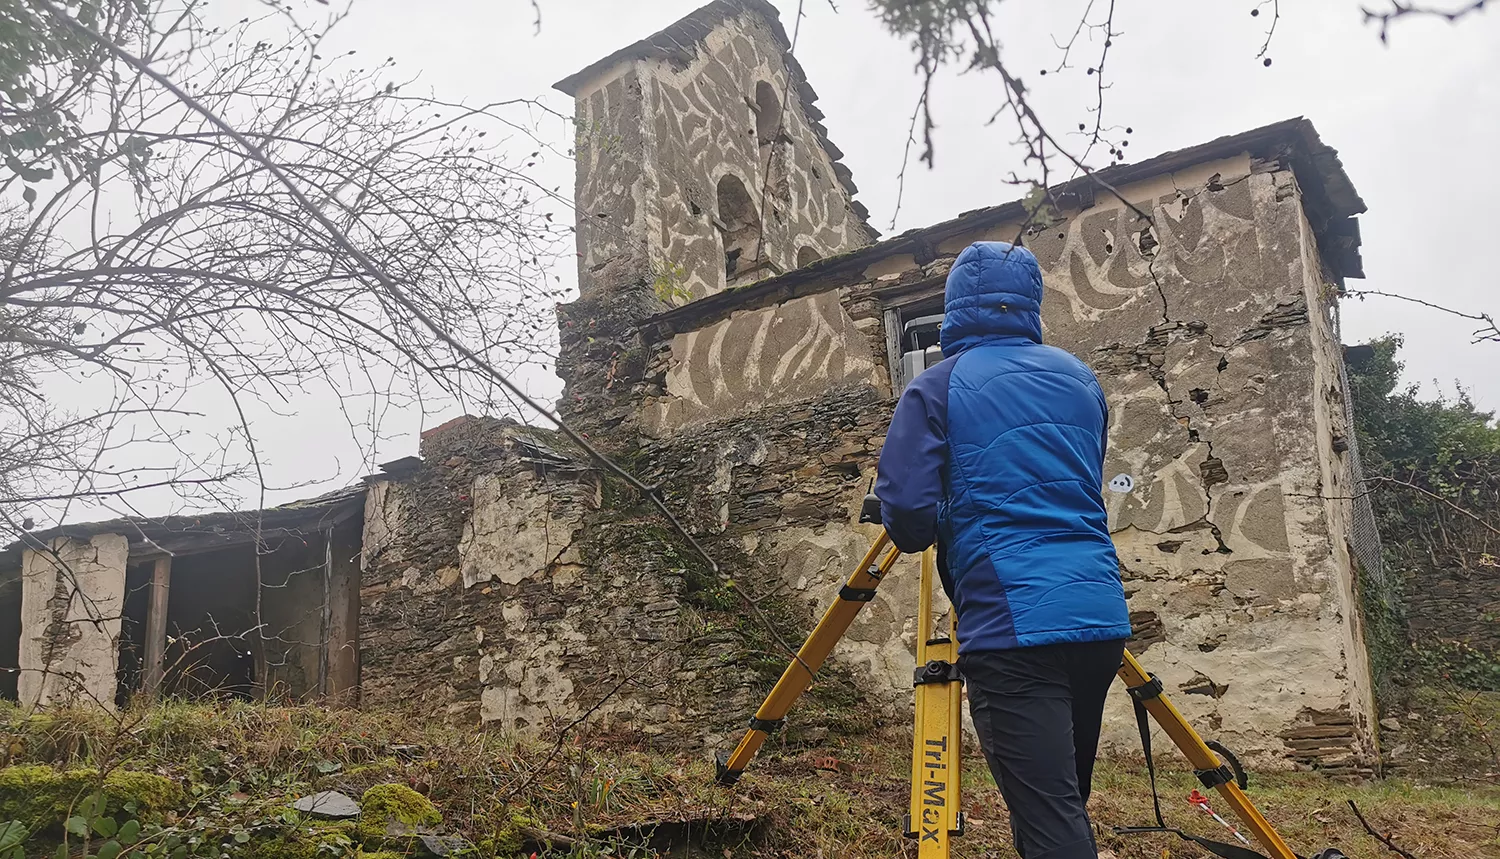 El proyecto Genadii de Ponferrada rehabilitará la iglesia de San Pedro de Villarino y habilitará un albergue